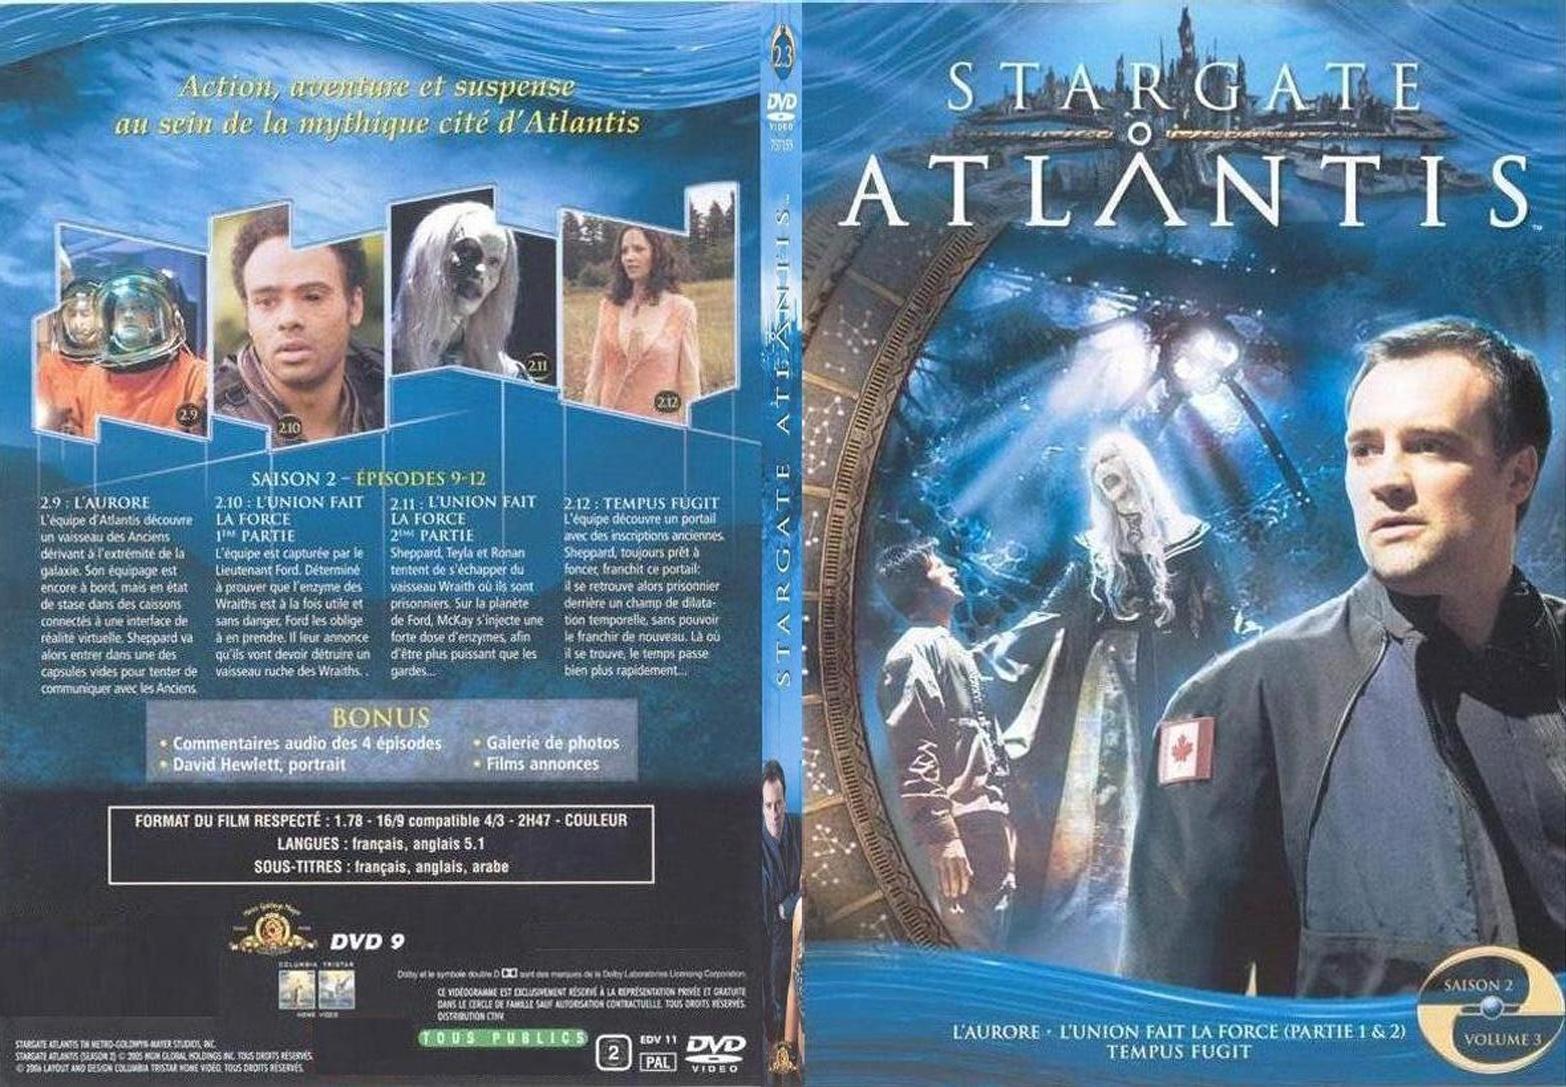 Jaquette DVD Stargate Atlantis saison 2 vol 3 - SLIM